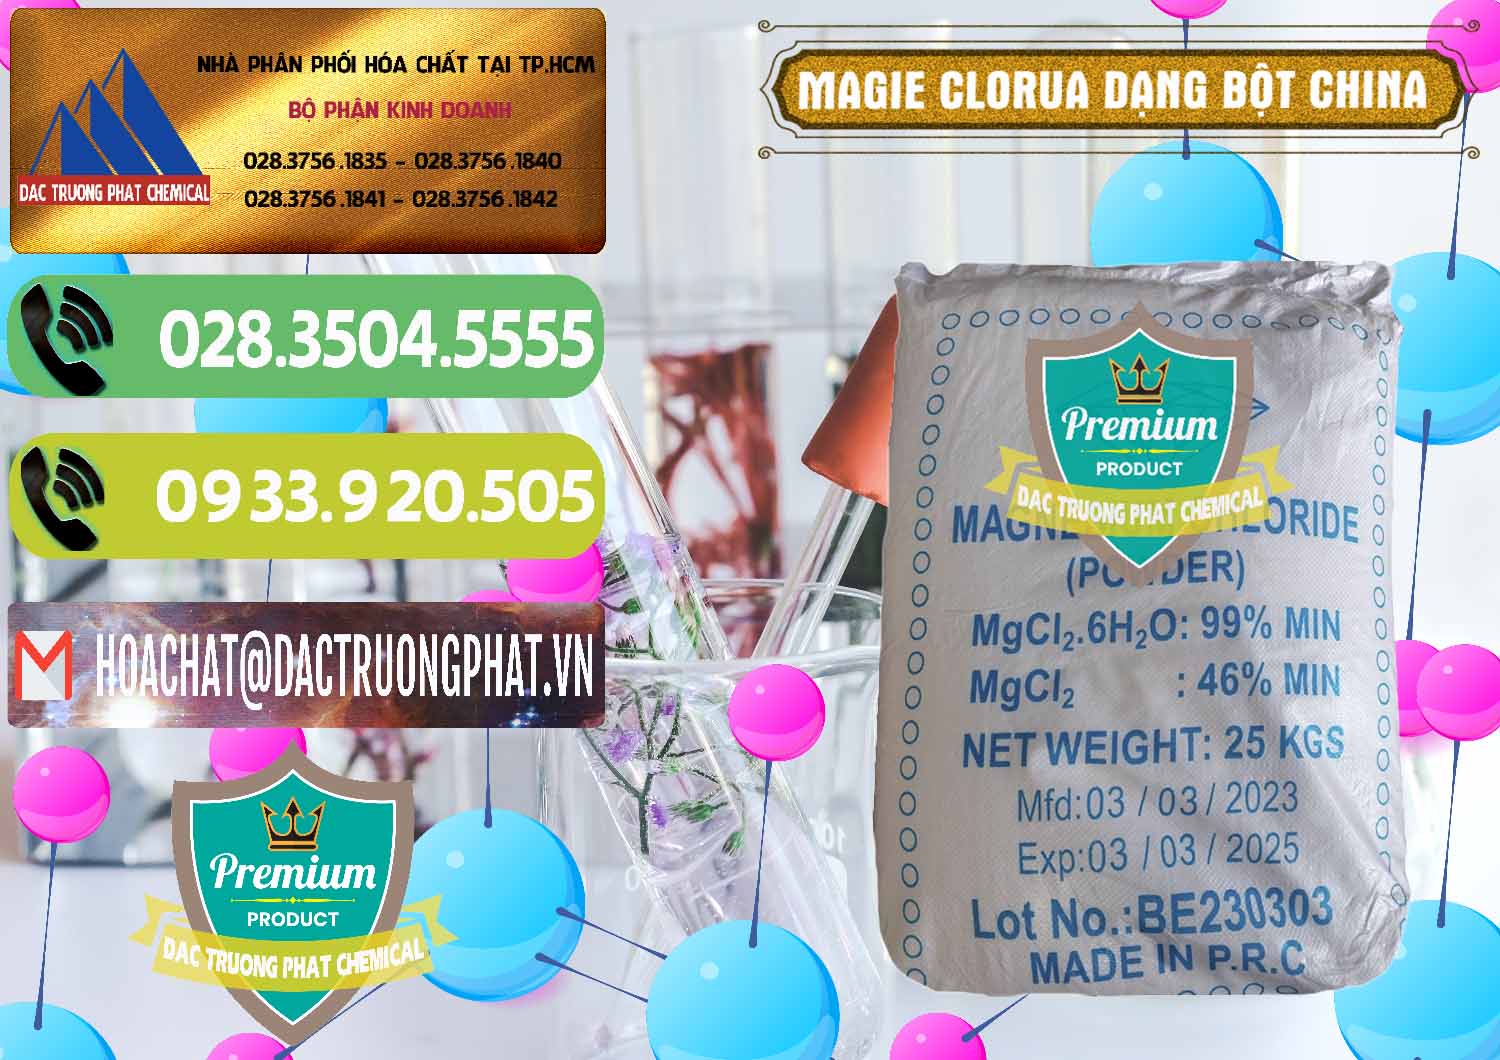 Nơi chuyên bán ( phân phối ) Magie Clorua – MGCL2 96% Dạng Bột Logo Kim Cương Trung Quốc China - 0387 - Cty chuyên bán và cung cấp hóa chất tại TP.HCM - hoachatmientay.vn